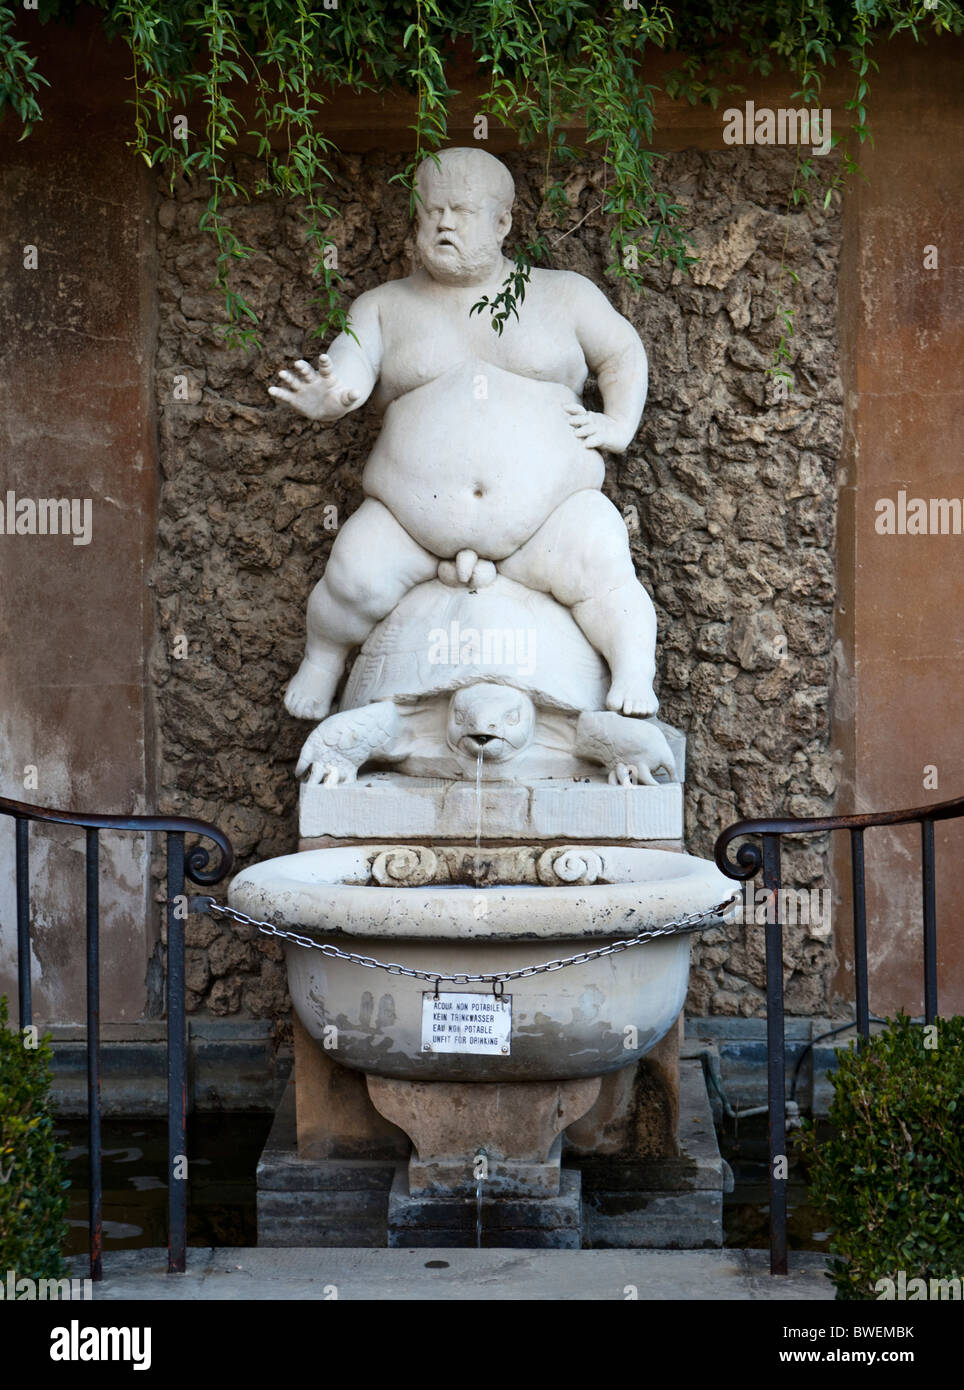 Copy of the Bacchino, a statue by Valerio Cioli of Cosimo Medici's Court Dwarf, Pietro Barbino (Morgante), Bacchus on a tortoise Stock Photo